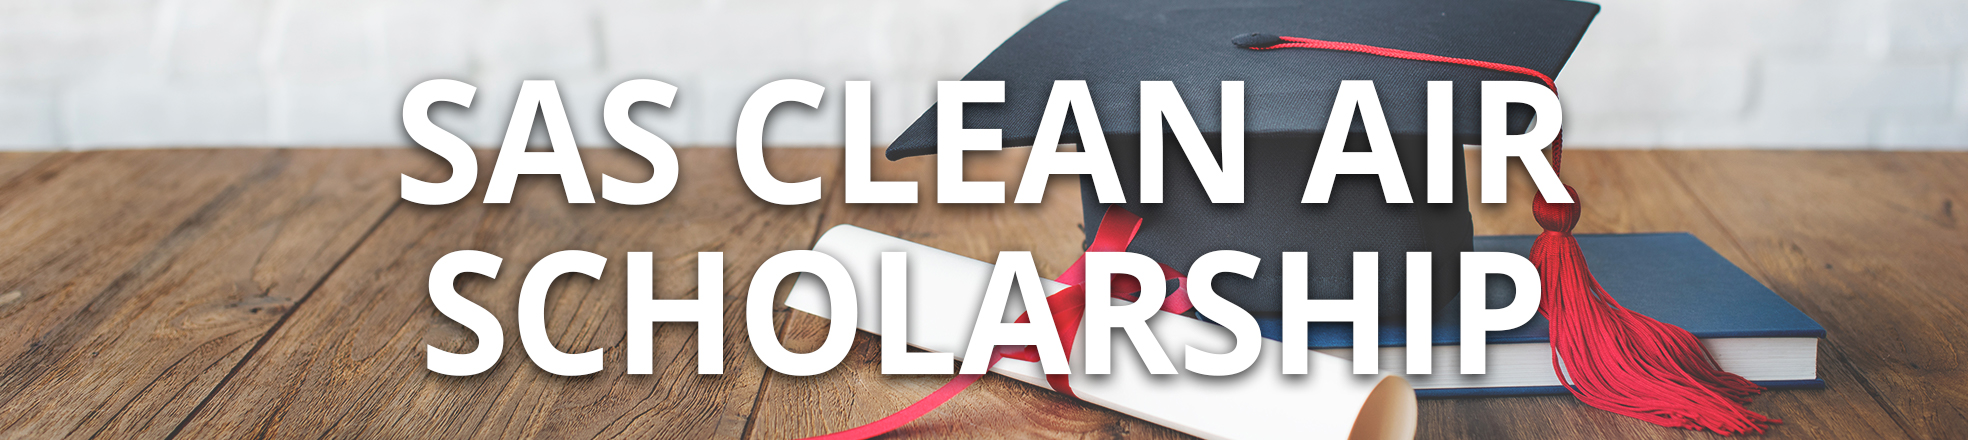 SAS Clean Air Scholarship